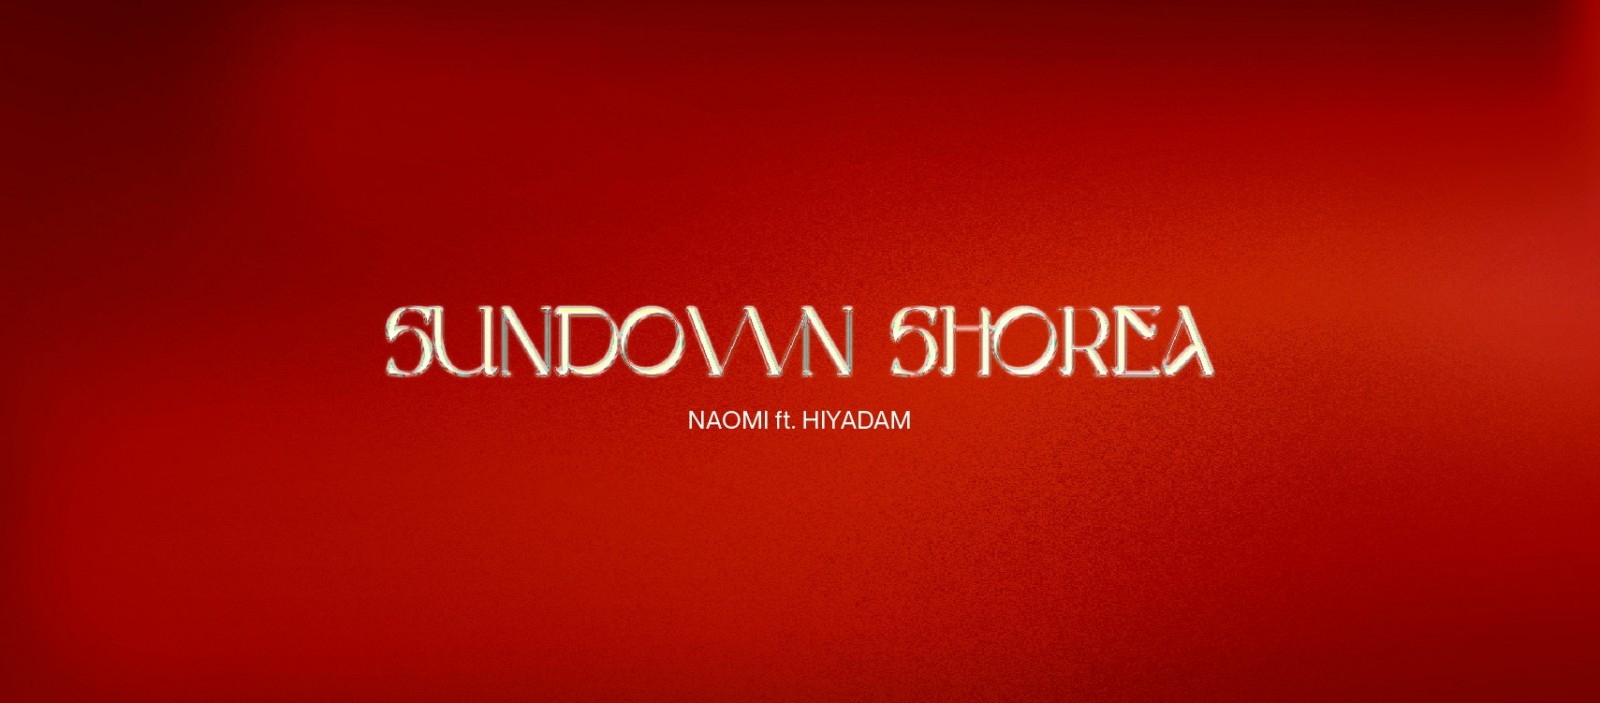 Nhạc phẩm Sundown Shorea ra mắt vào "hoàng hôn" của 2020, nhưng sẽ sớm tỏa sáng vào "bình minh" 2021 với Naomi, Rapper Hiyadam và M.A.U Collective